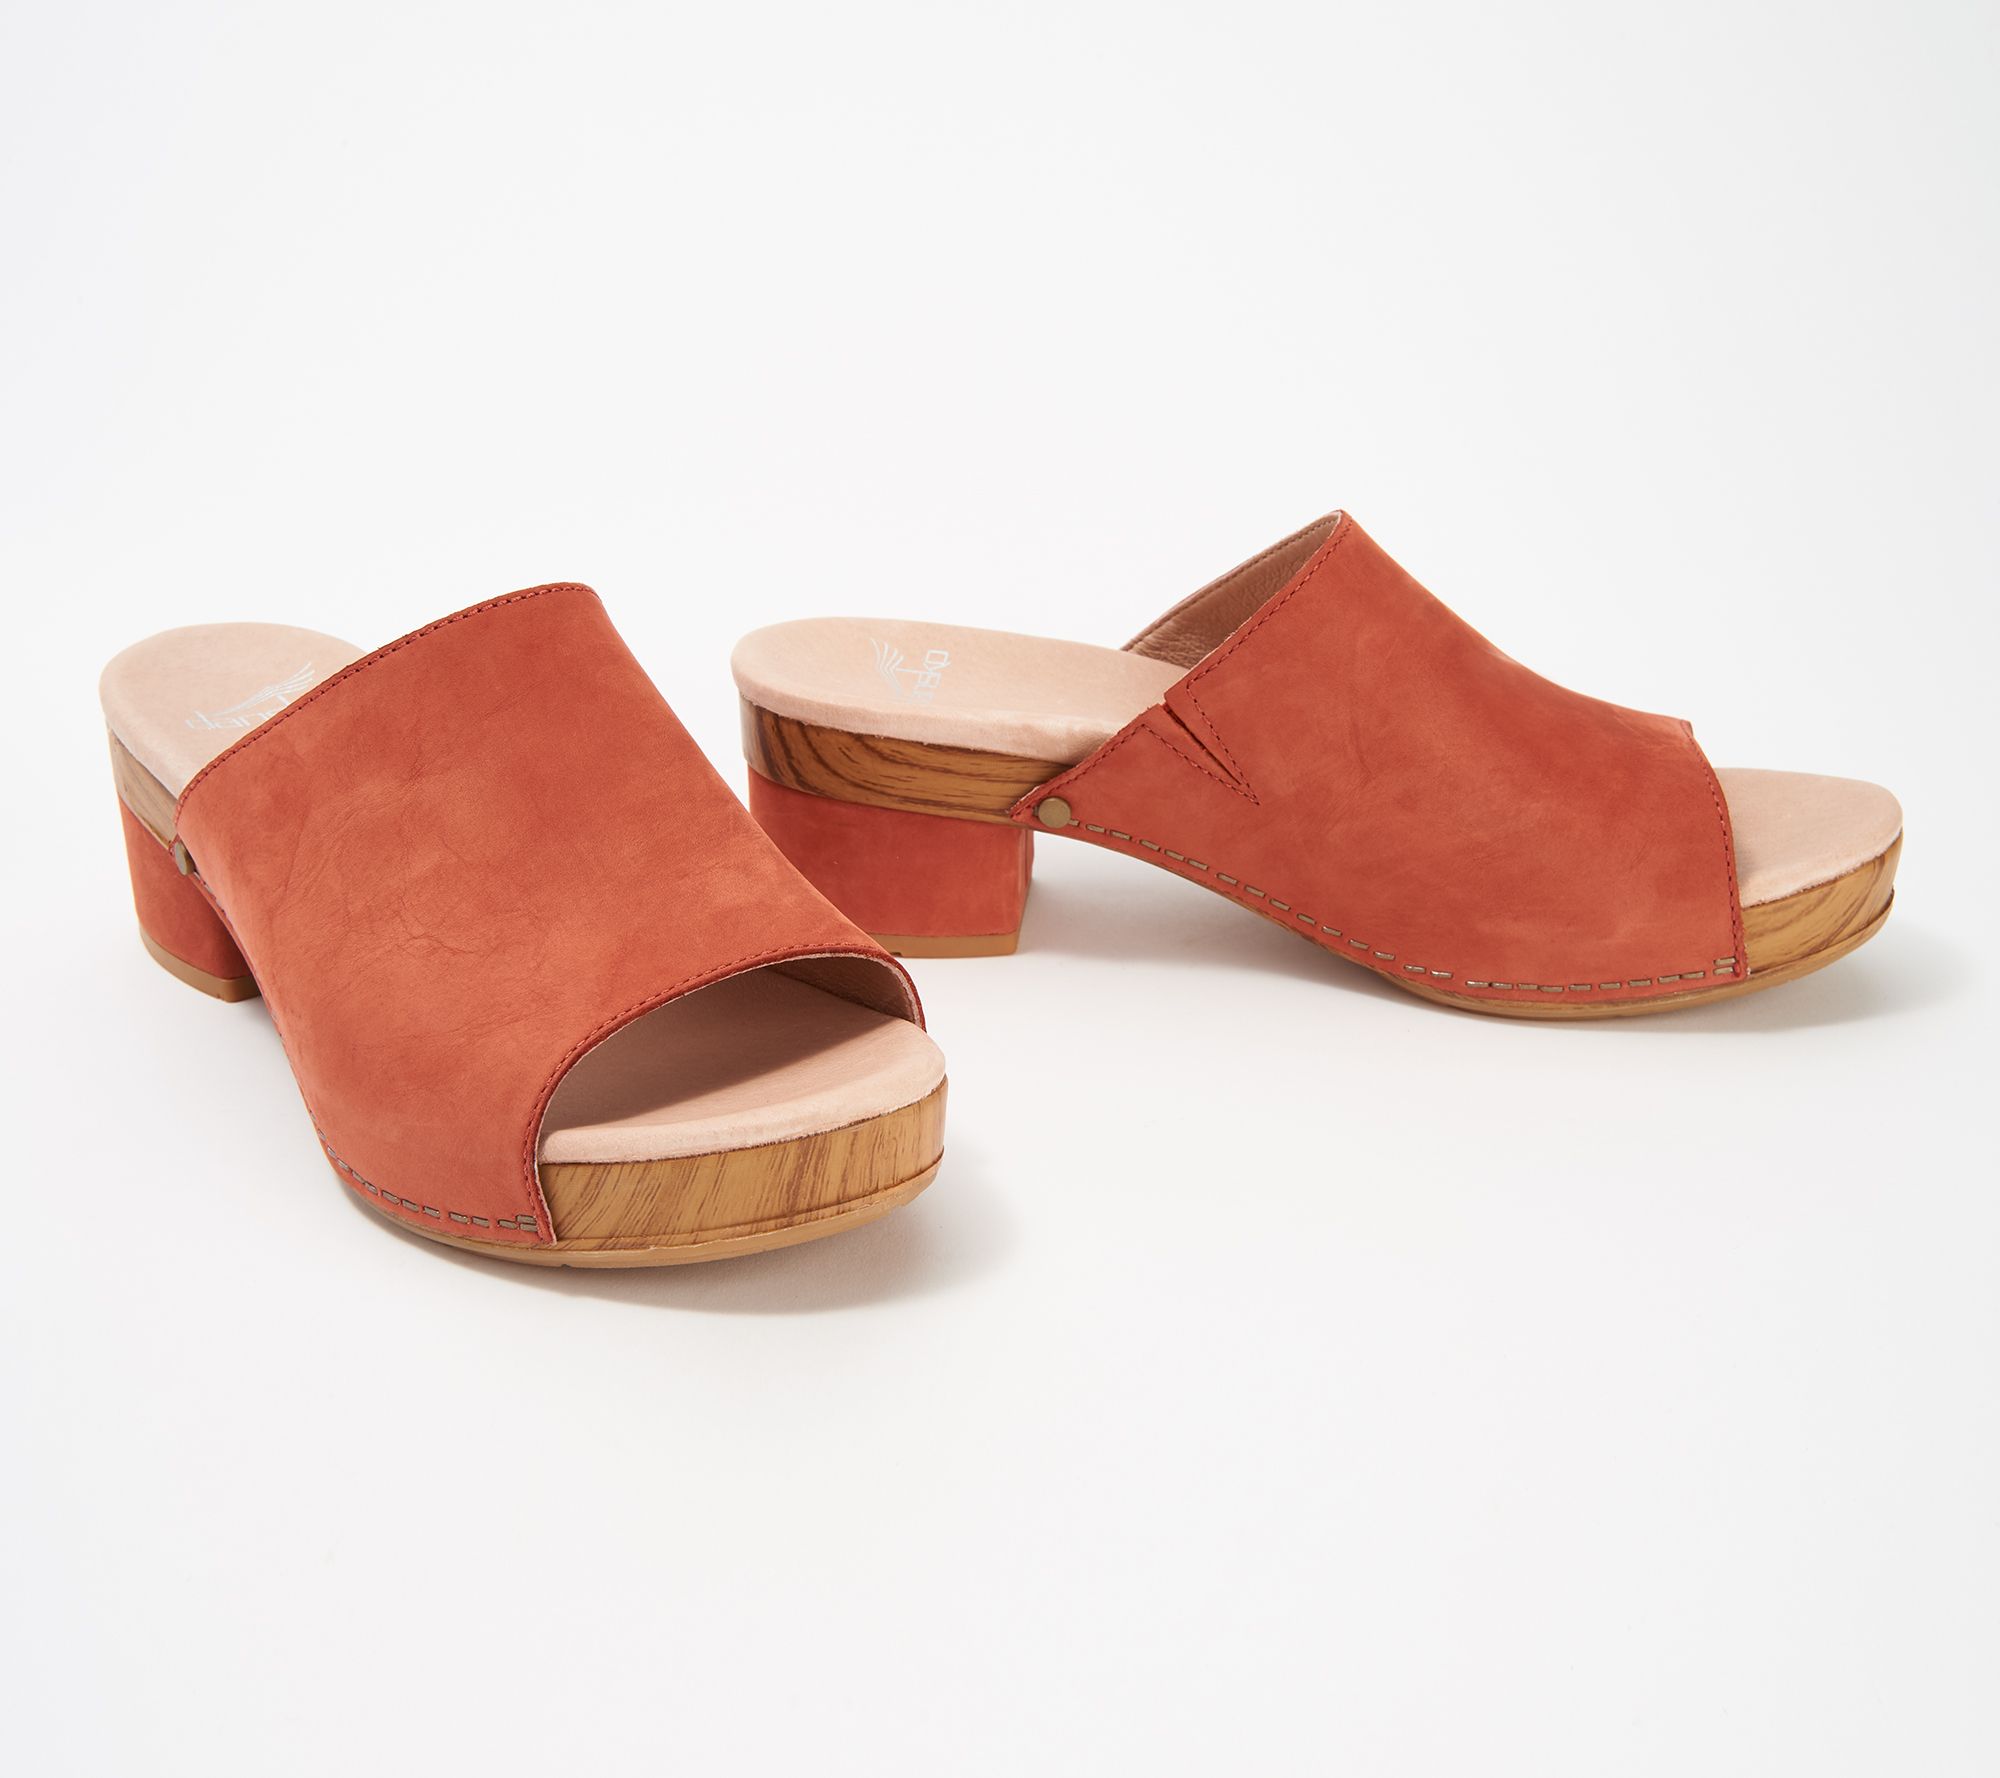 dansko clogs wooden sole